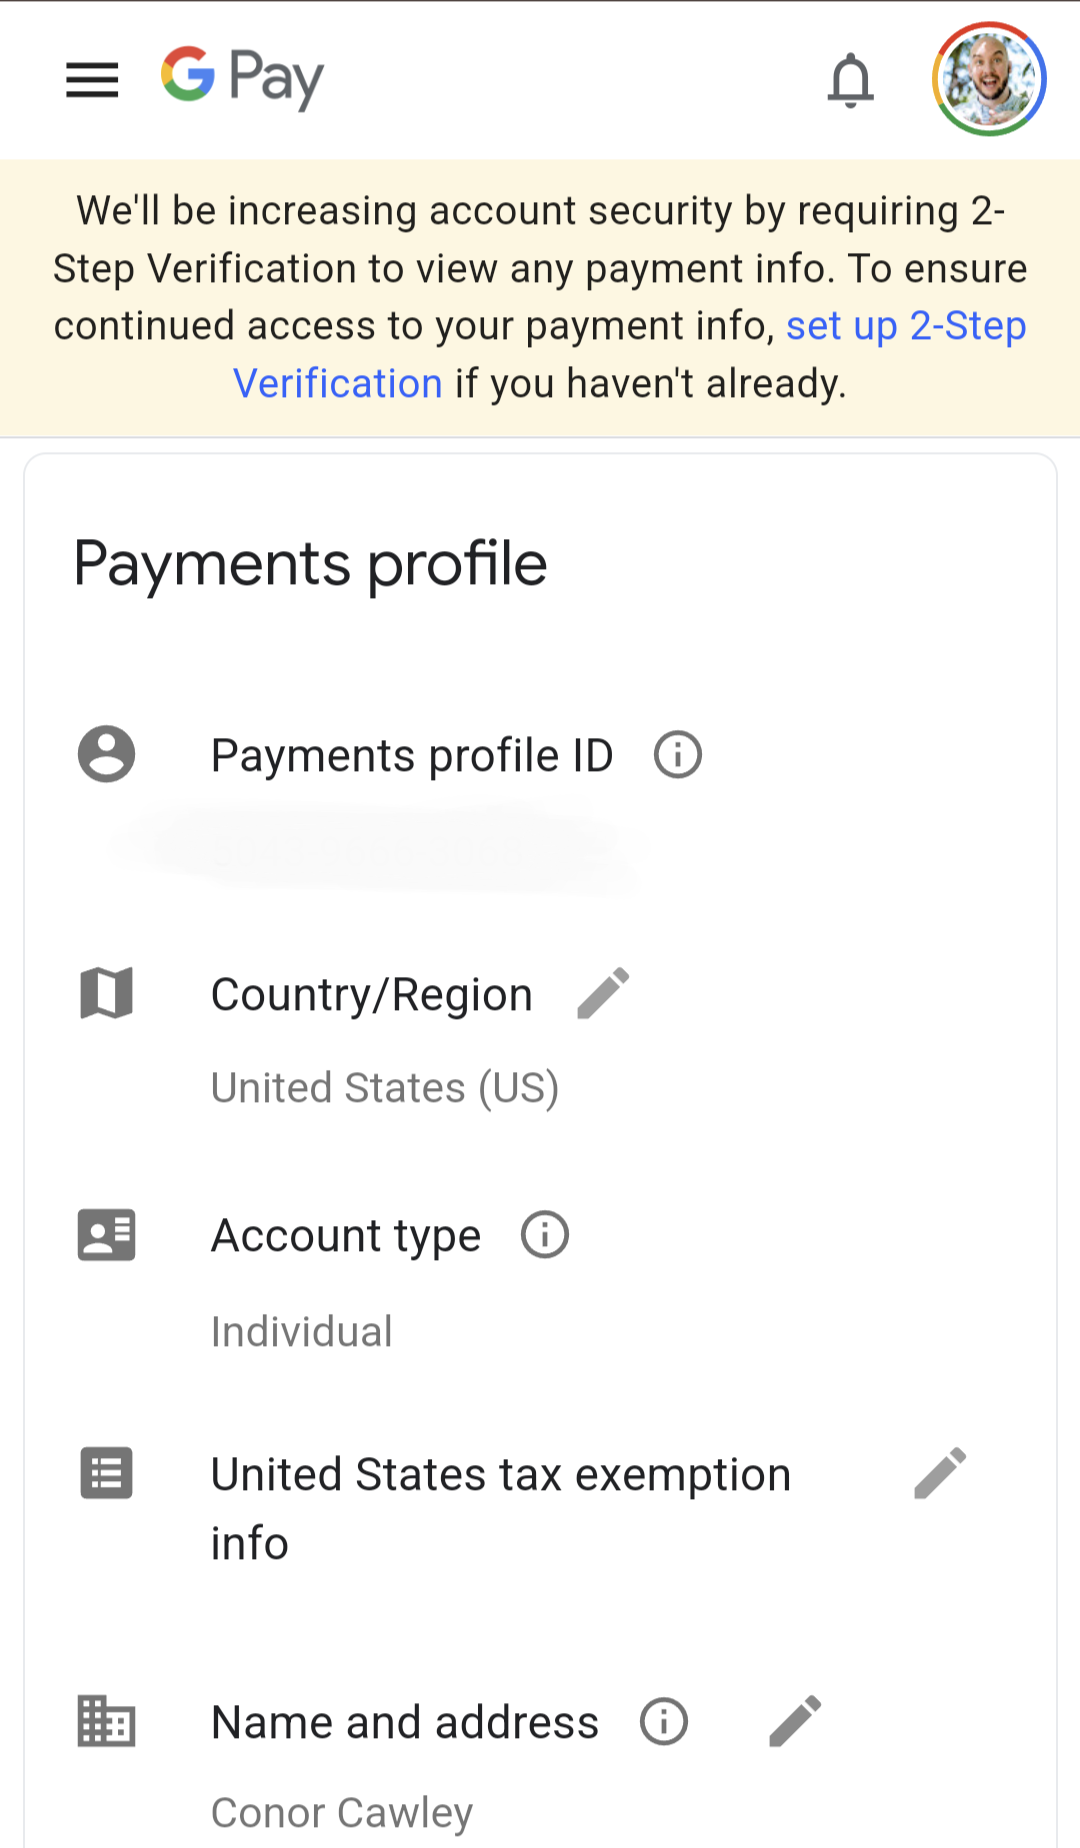 Captura de tela do perfil de pagamento da Carteira virtual do Google